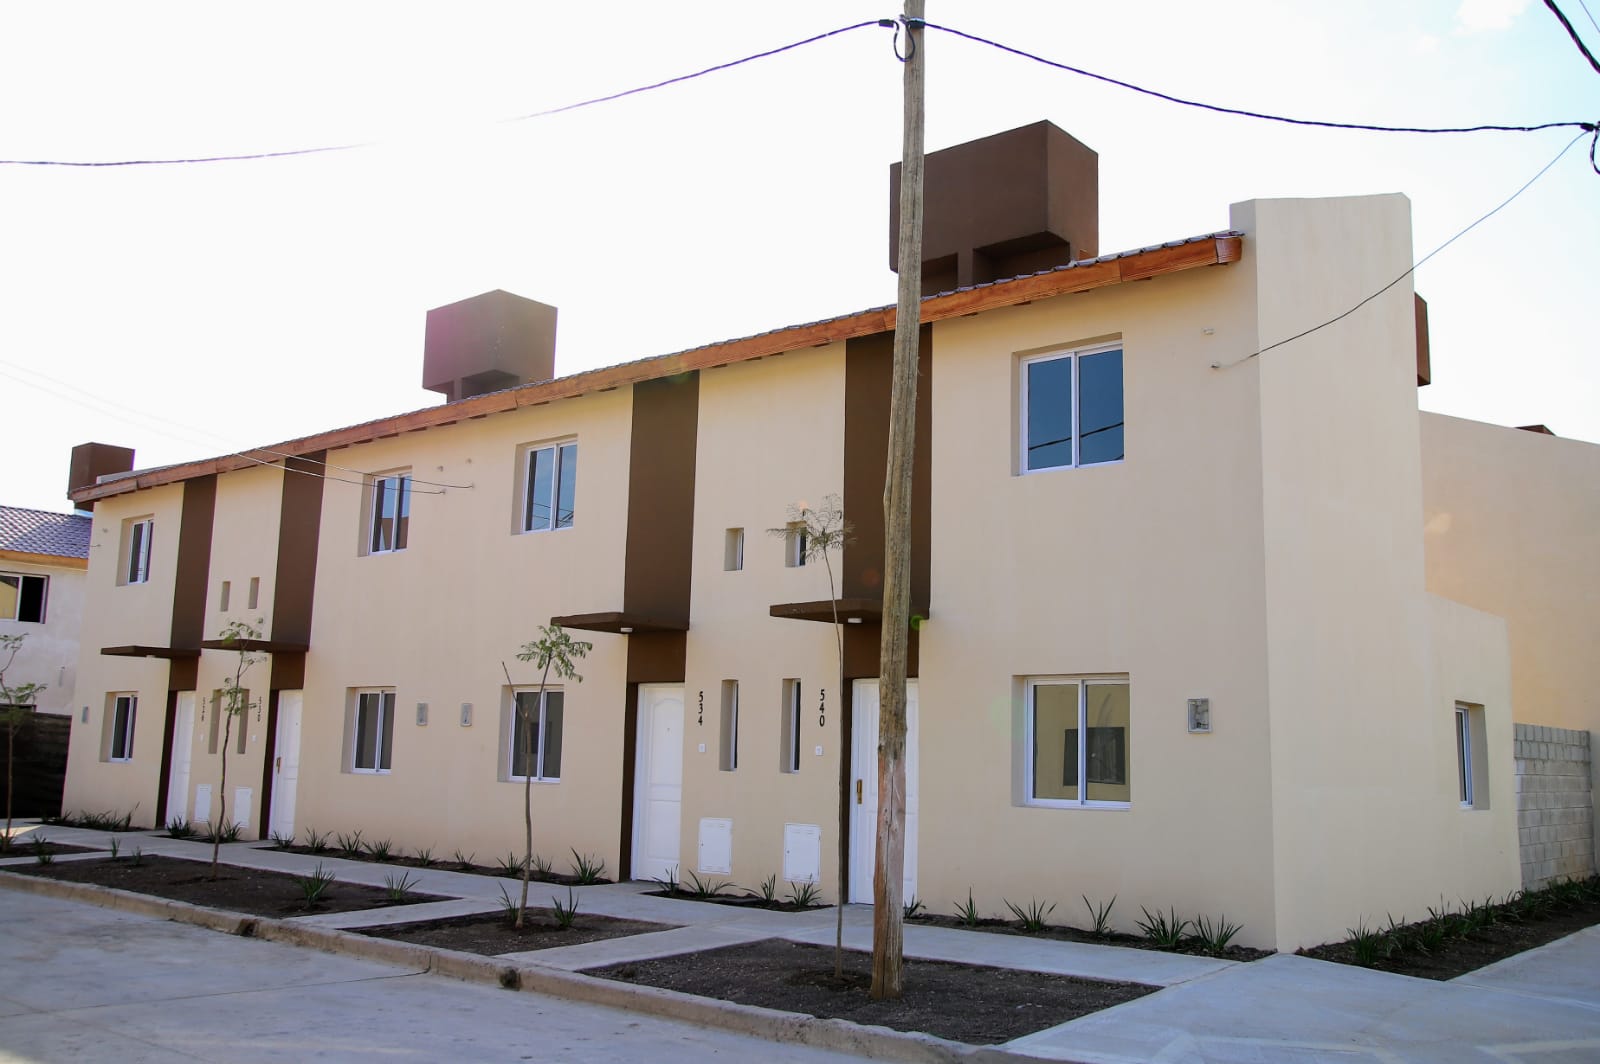 El ministro Ferraresi, junto a Chornobroff y Sierra, entregaron viviendas a familias de Barrio Azul